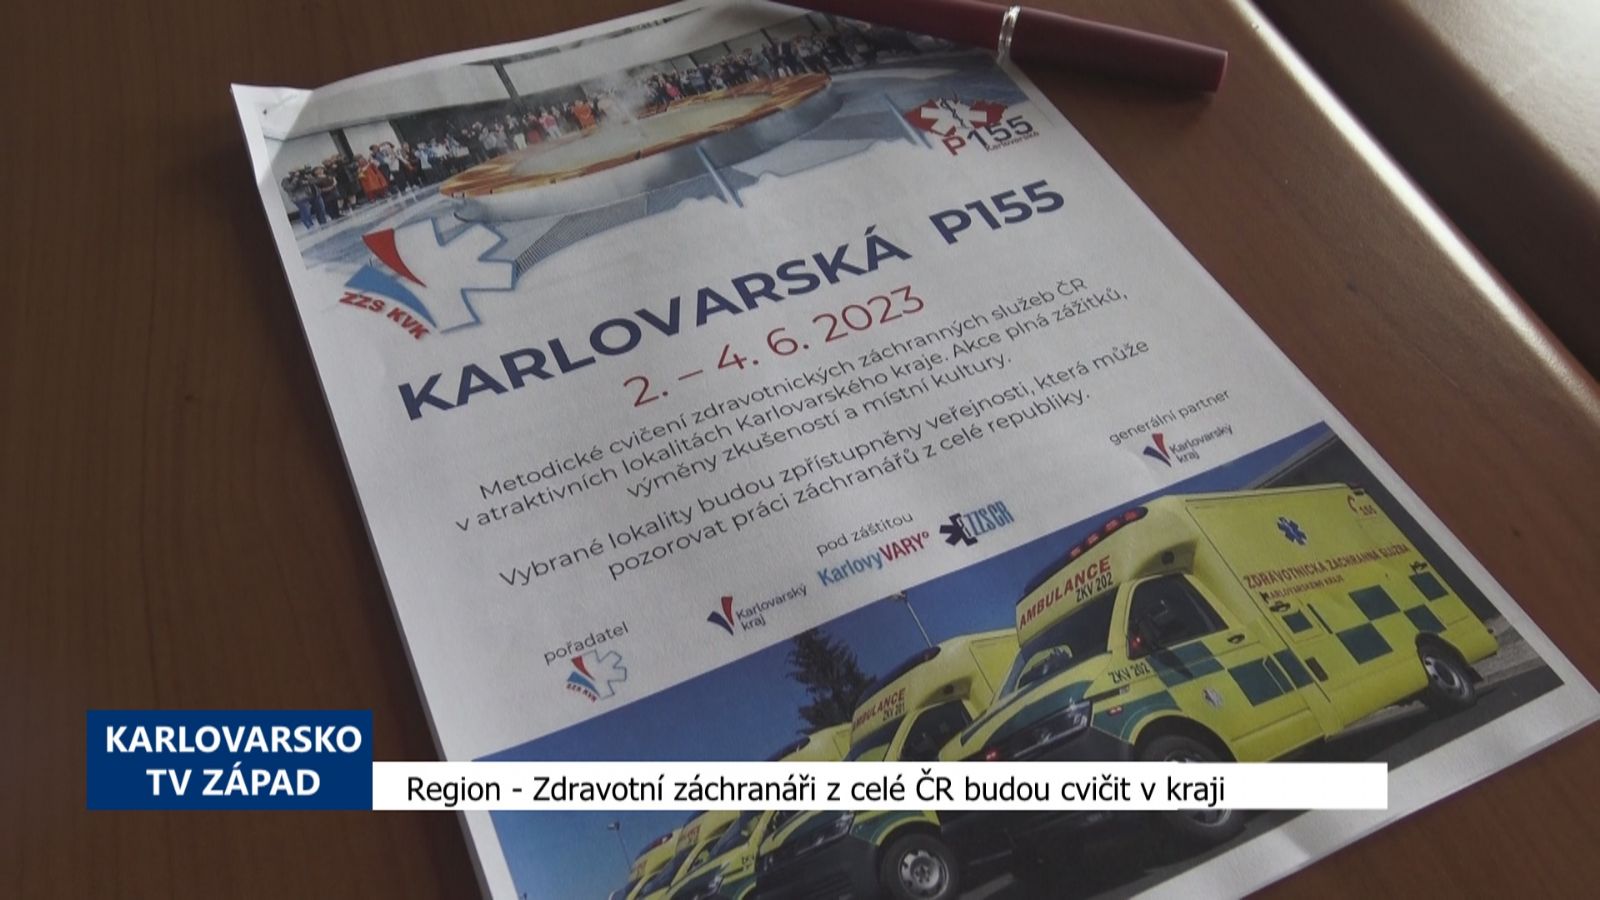 Region: Zdravotní záchranáři z celé ČR budou cvičit v kraji (TV Západ)